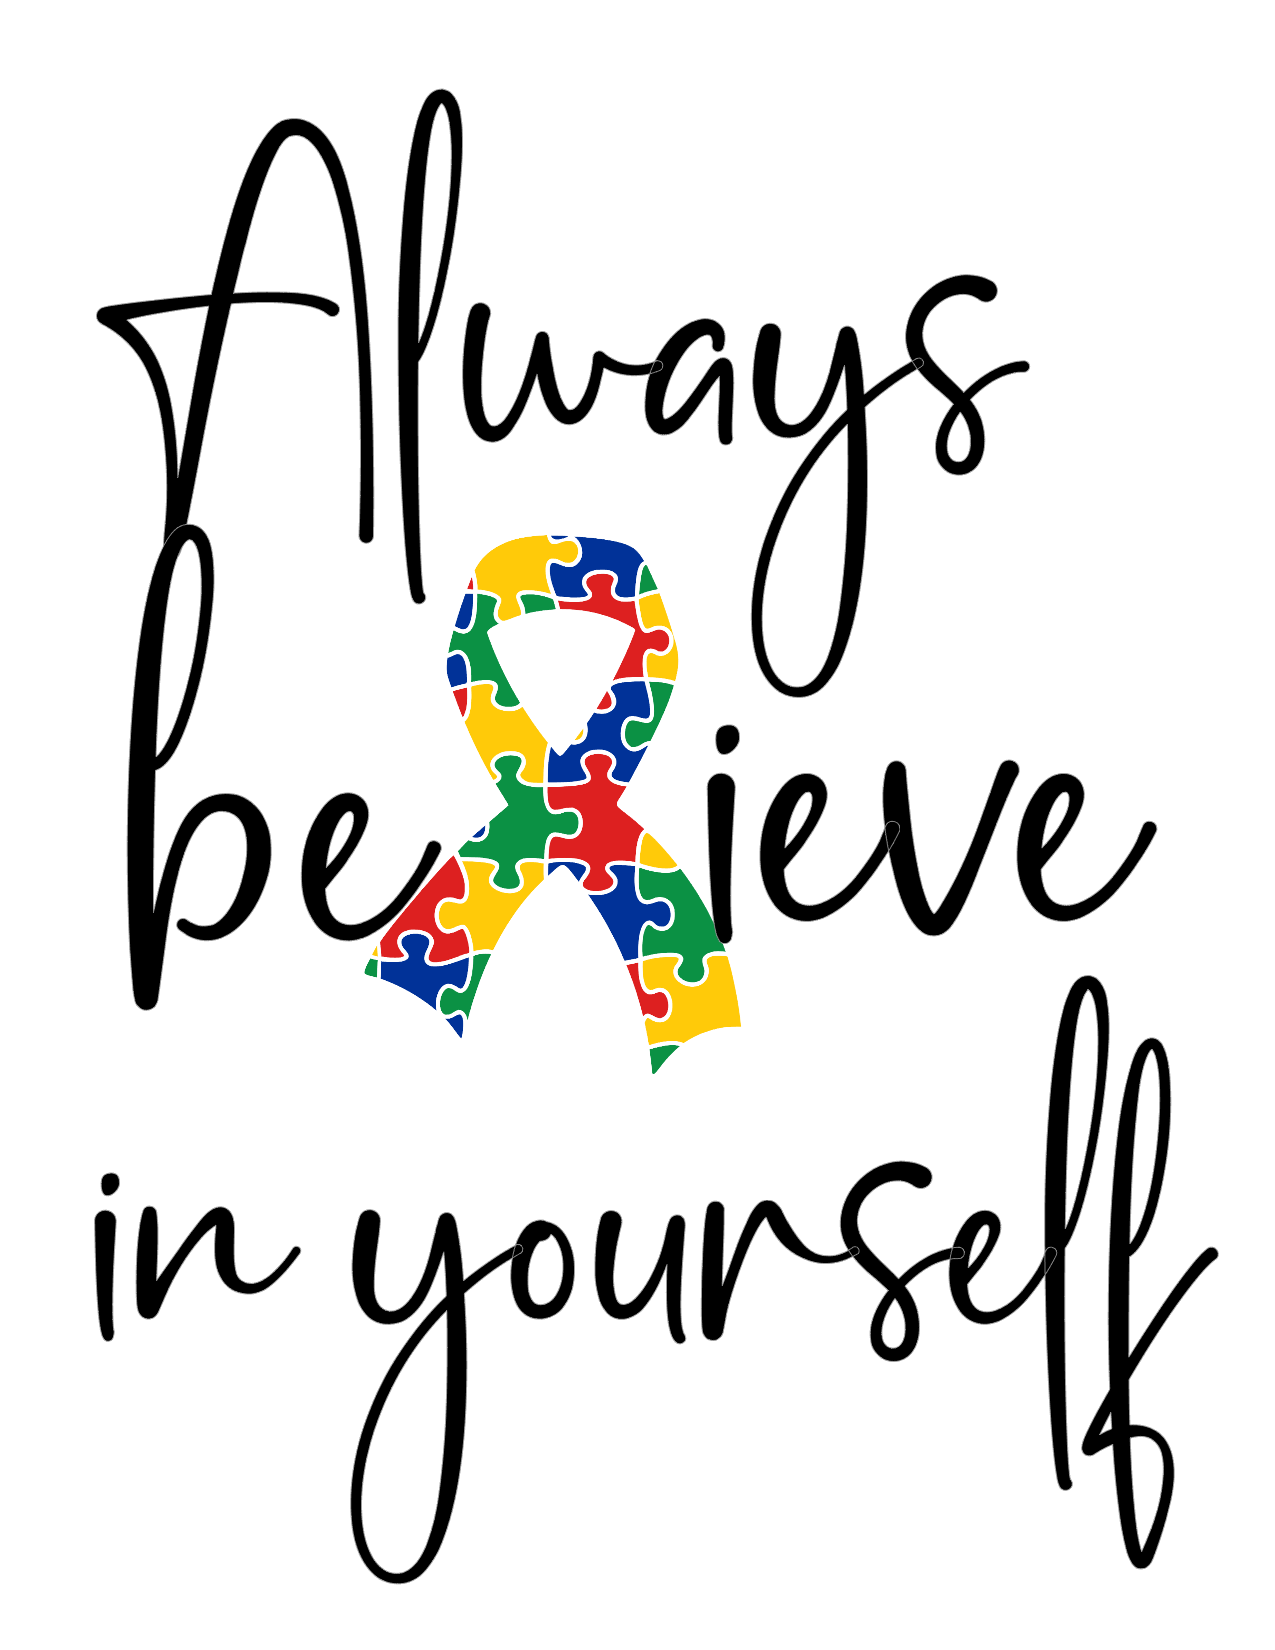 #5 Always believe in yourself (autism)